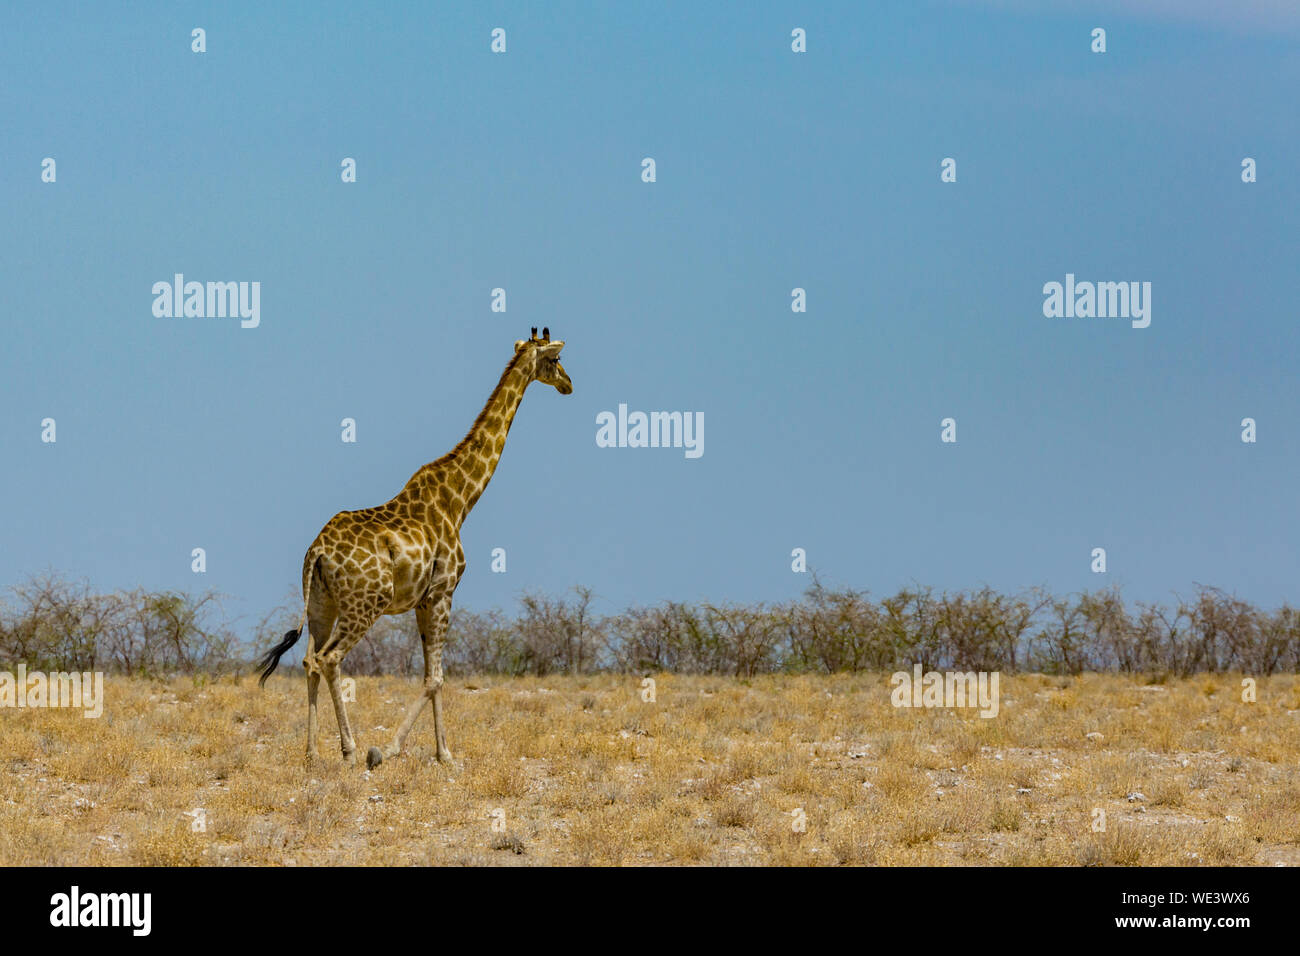 Una jirafa macho caminando naturales, sabanas con arbustos, cielo azul Foto de stock